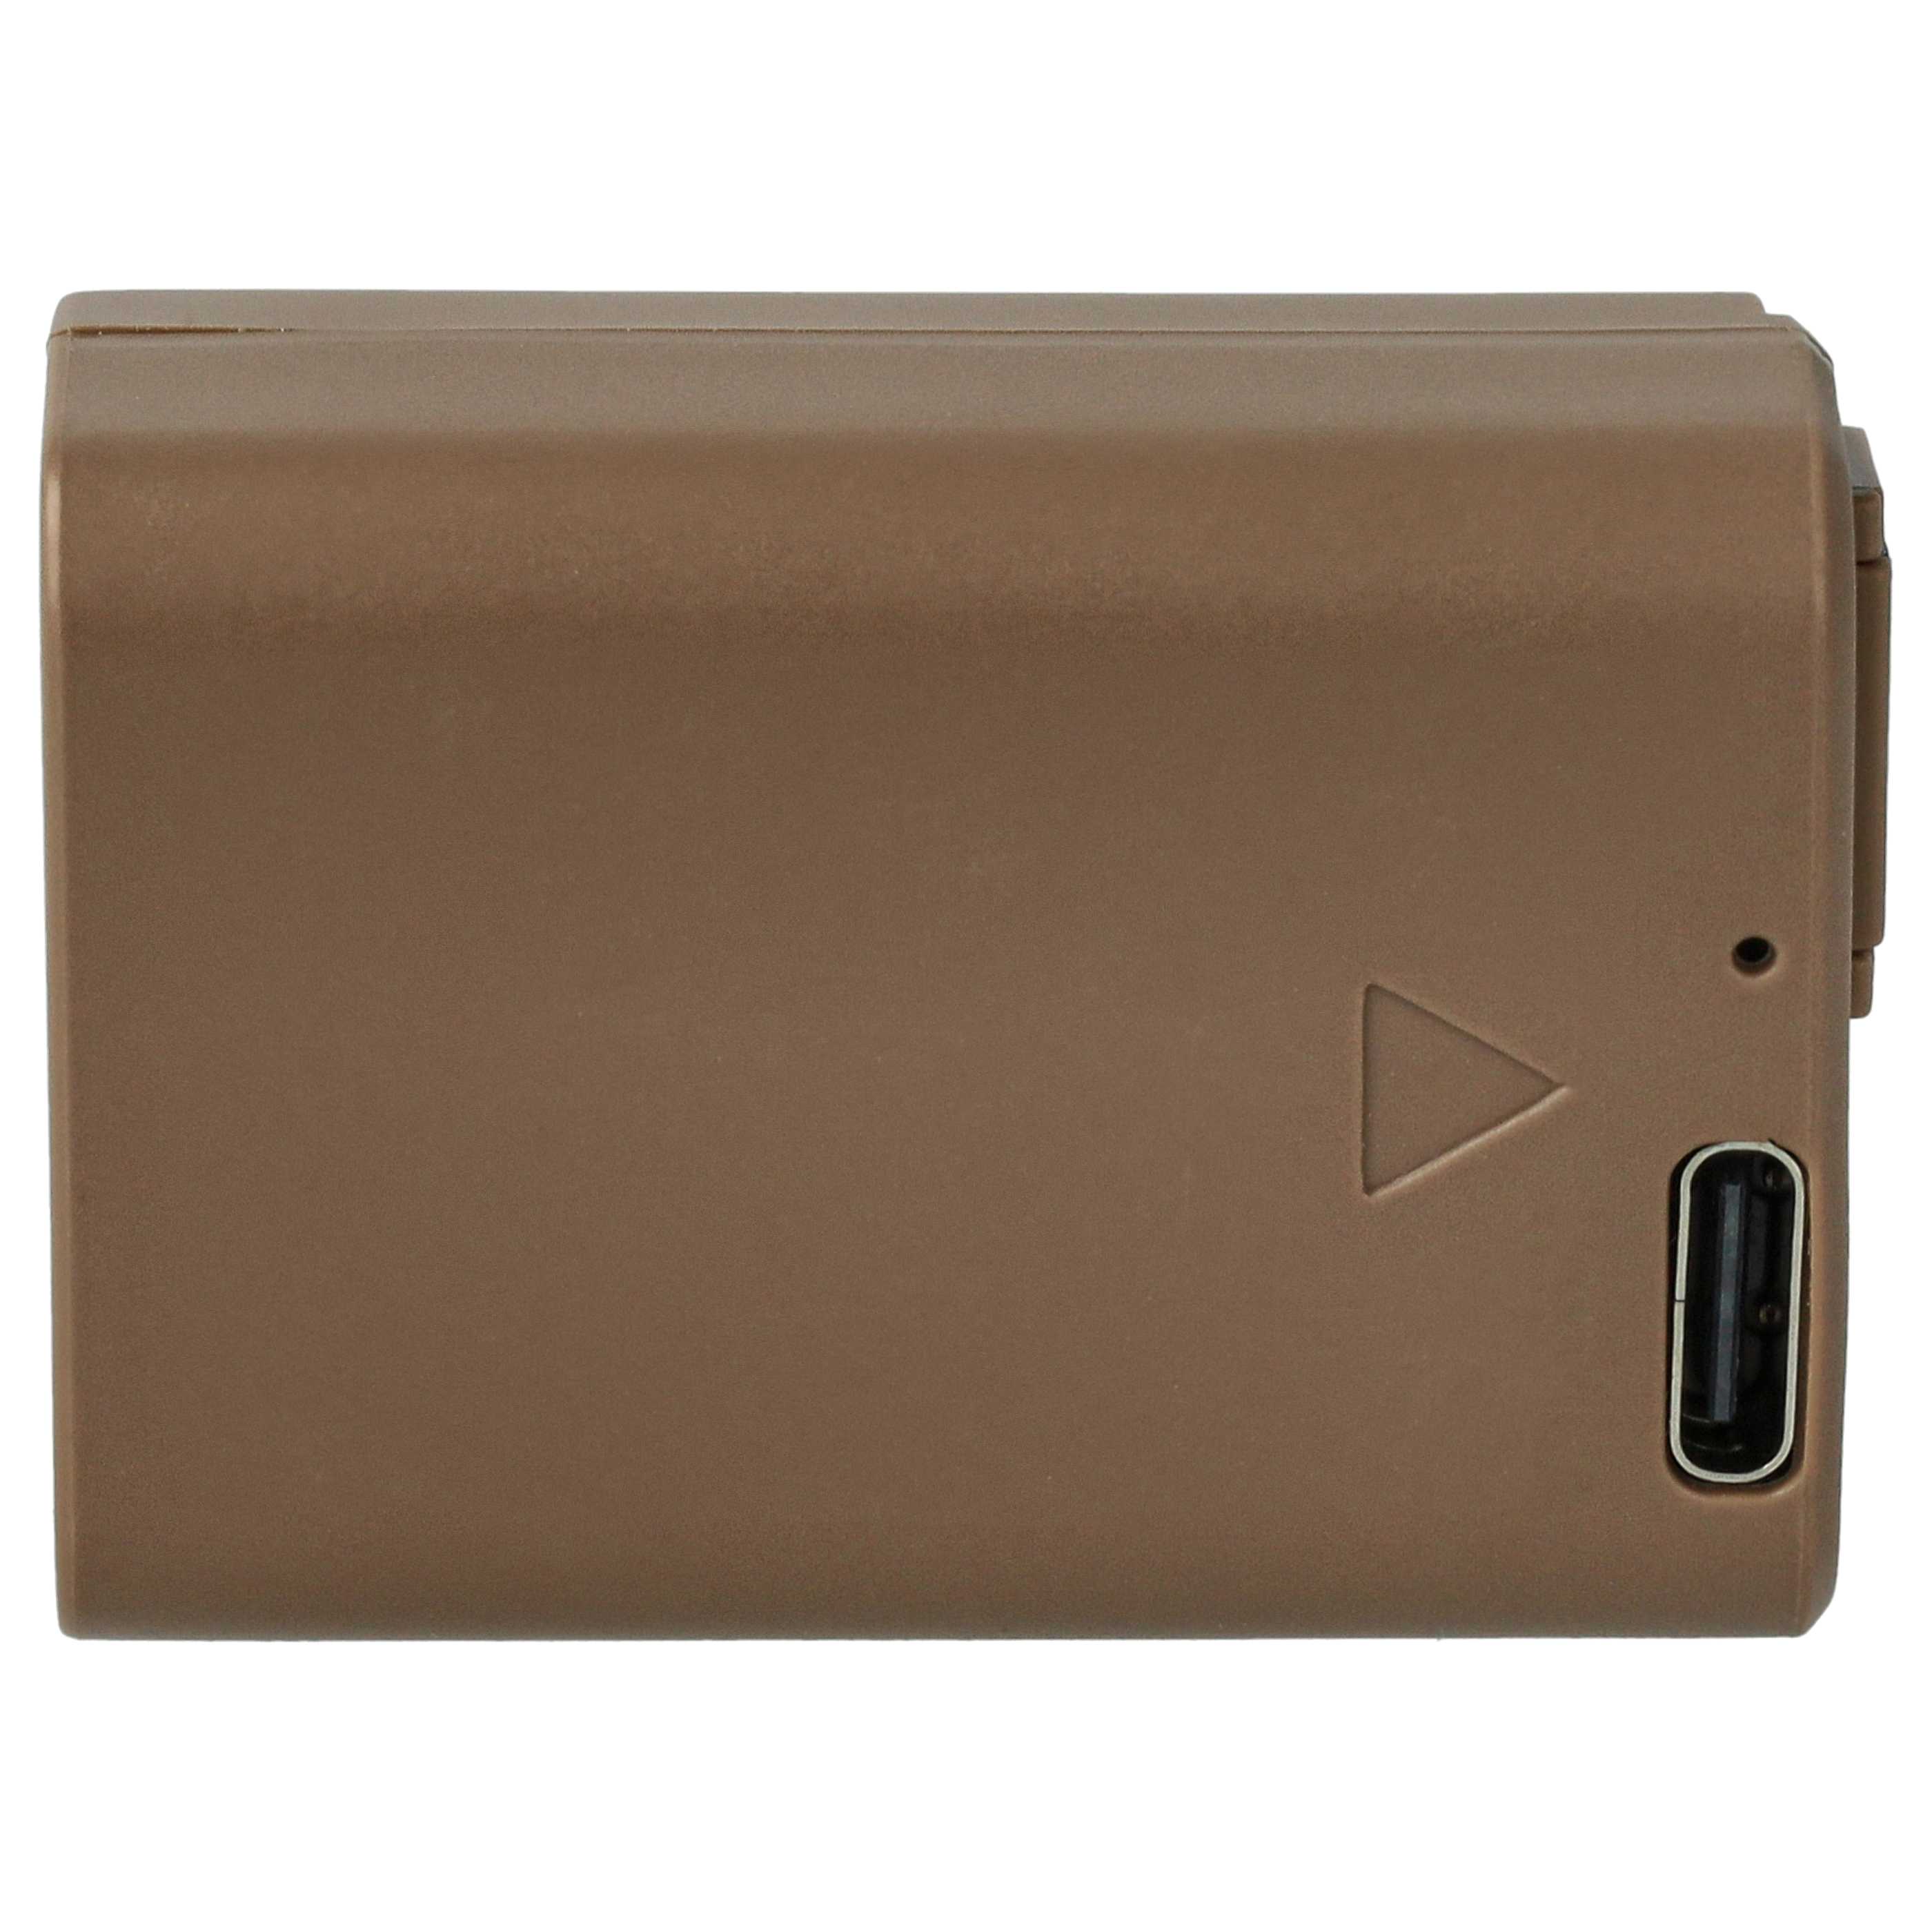 Kamera-Akku als Ersatz für Sony NP-FW50 - 900mAh 7,4V Li-Ion mit Infochip, mit USB-C Buchse